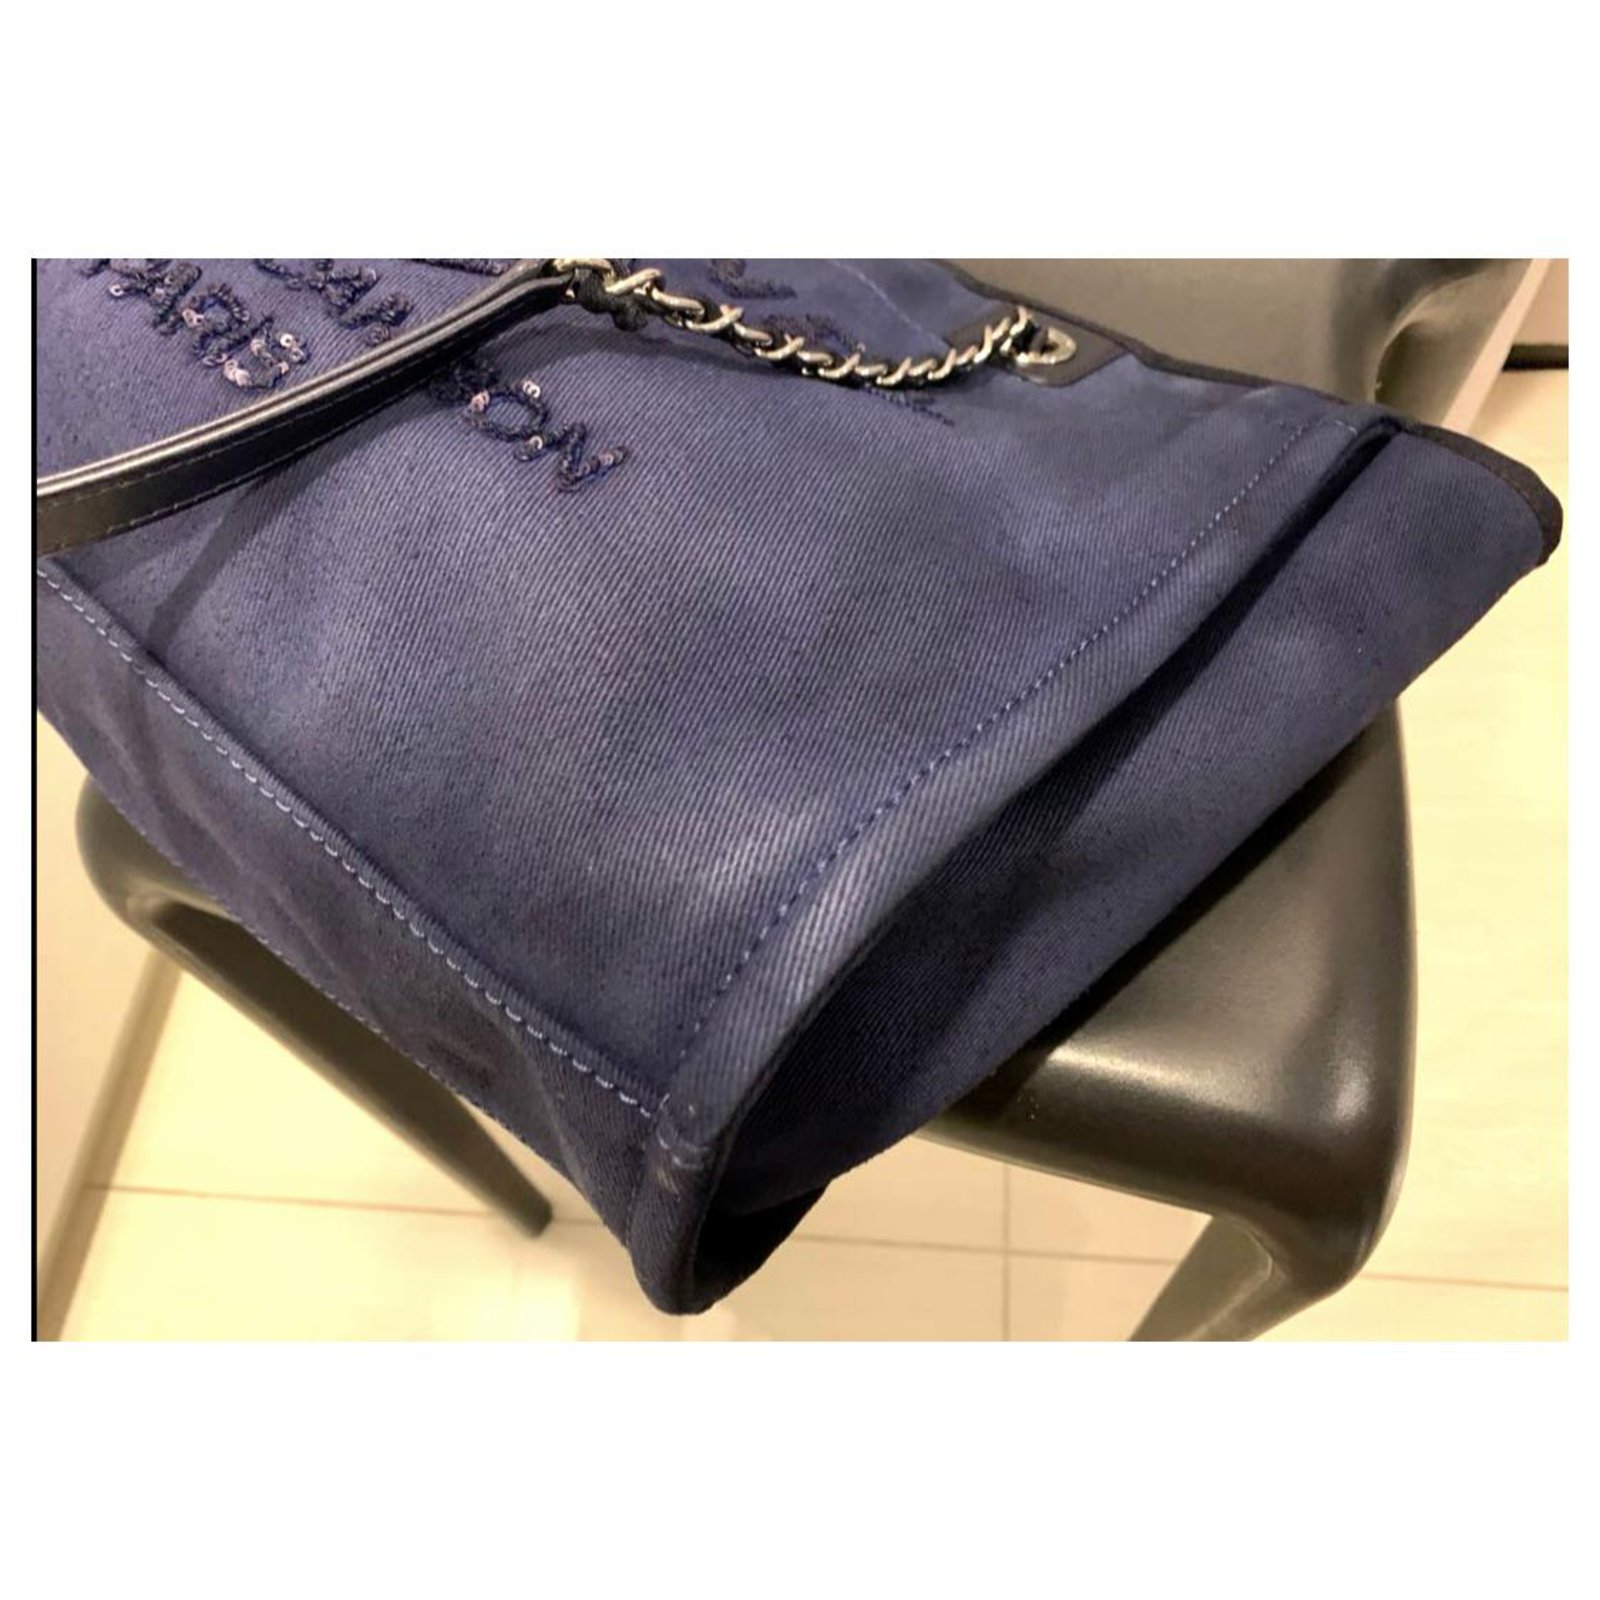 Chanel Deauville Tote Bag Canvas Dark Blue LGHW